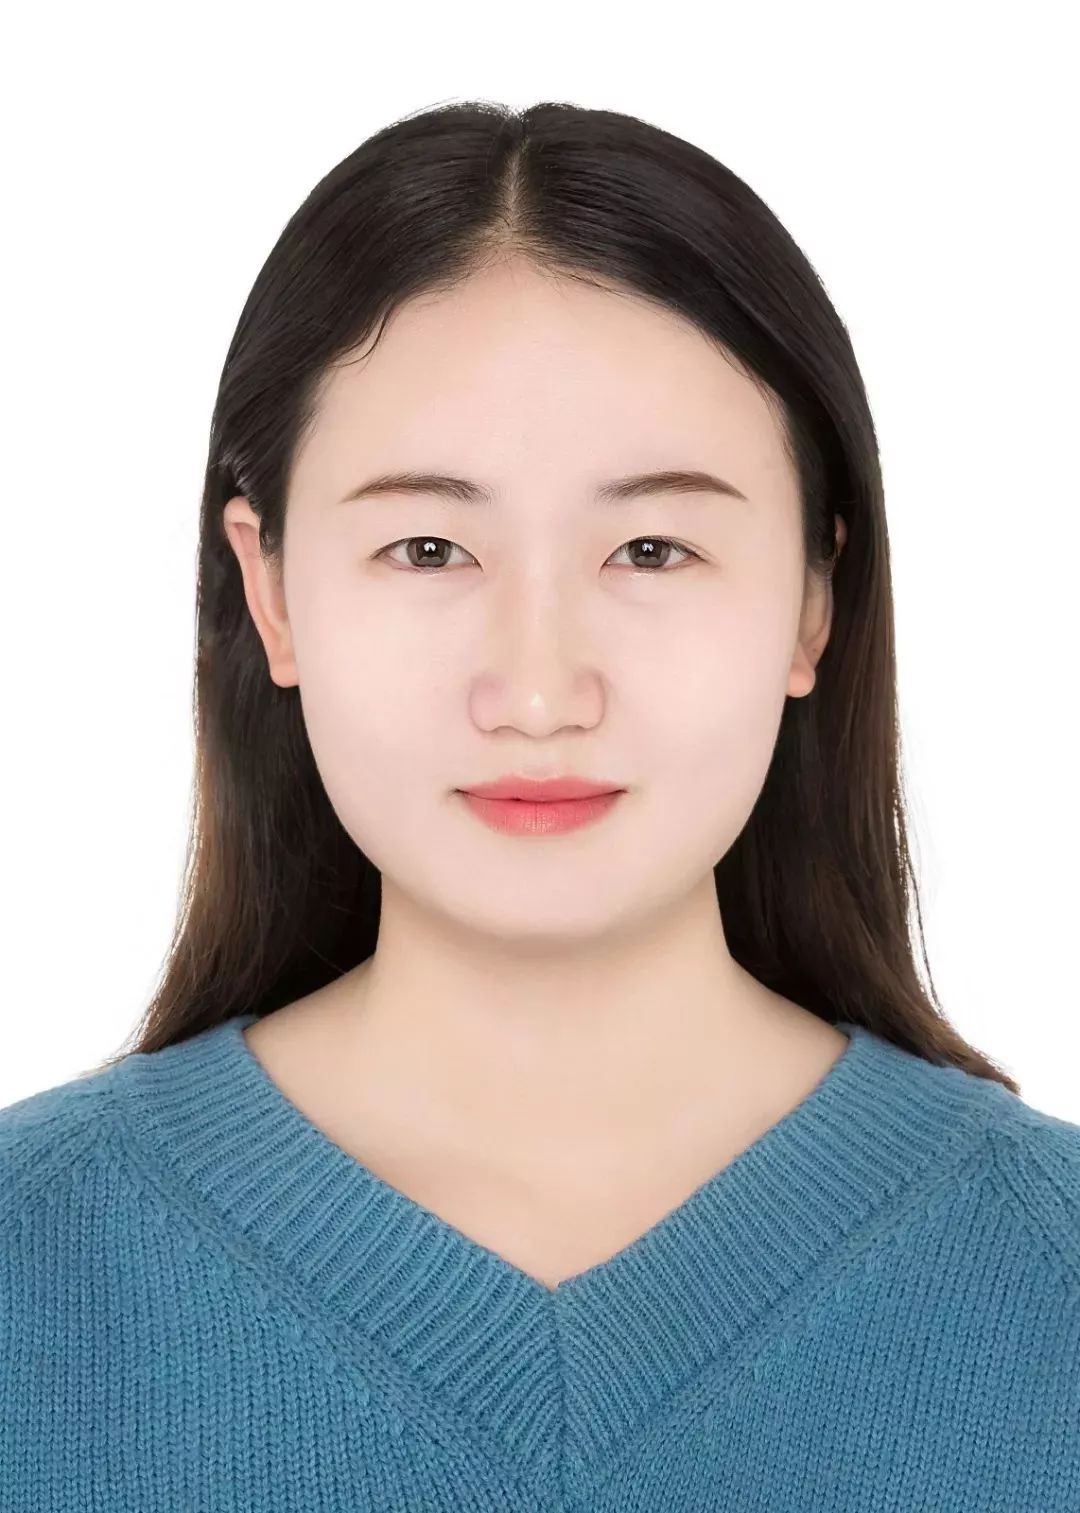 张飒,女,20岁,中共预备党员,河南邓州人,安阳职业技术学院机电工程系